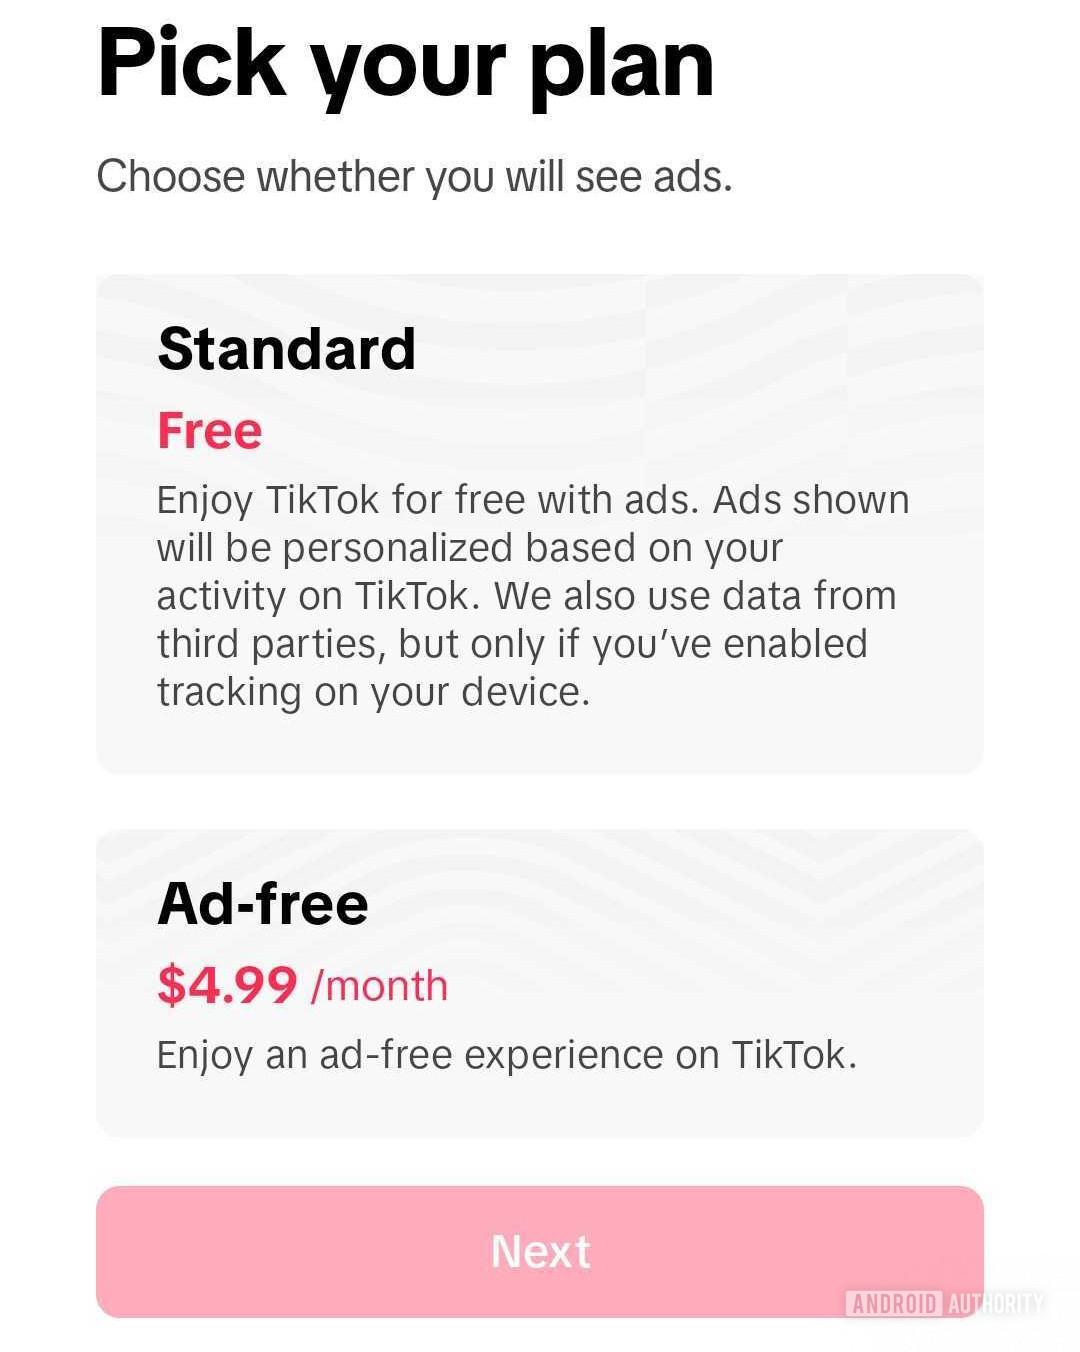 Plano de assinatura gratuita de anúncios do TikTok 1